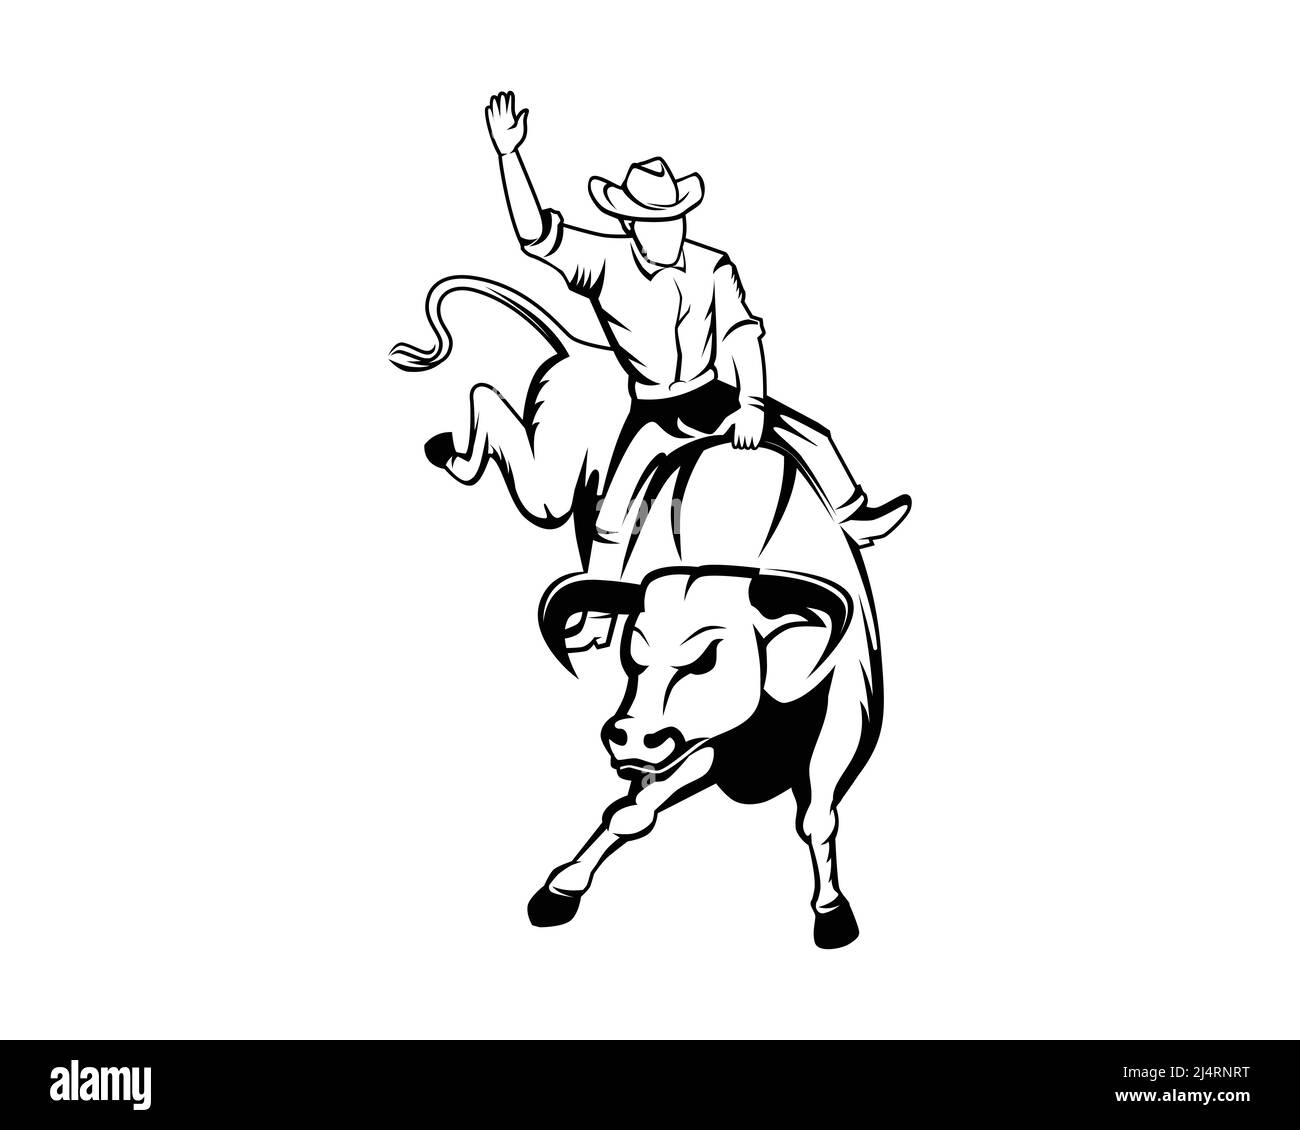 Rodeo oder Cowboy auf einer wilden und wilden Stierkampfillustration mit Silhouette Style Vector Stock Vektor